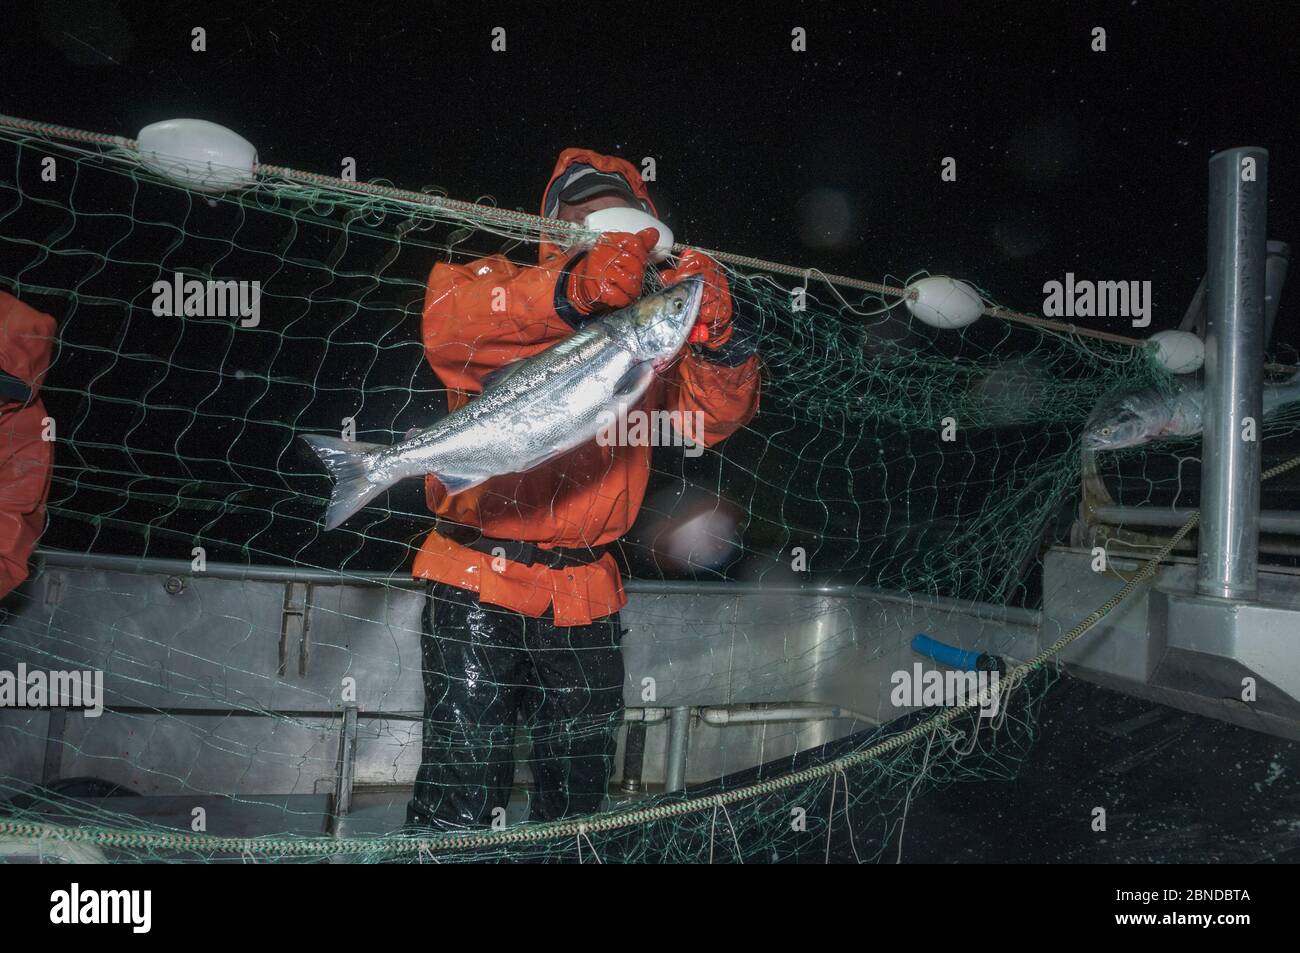 Fischer, der Sockeye Lachs (Oncorhynchus nerka) aus dem Treibnetz aufwirfelt. Naknek River, Bristol Bay, Alaska, USA, Juni 2015. Modell freigegeben. Stockfoto